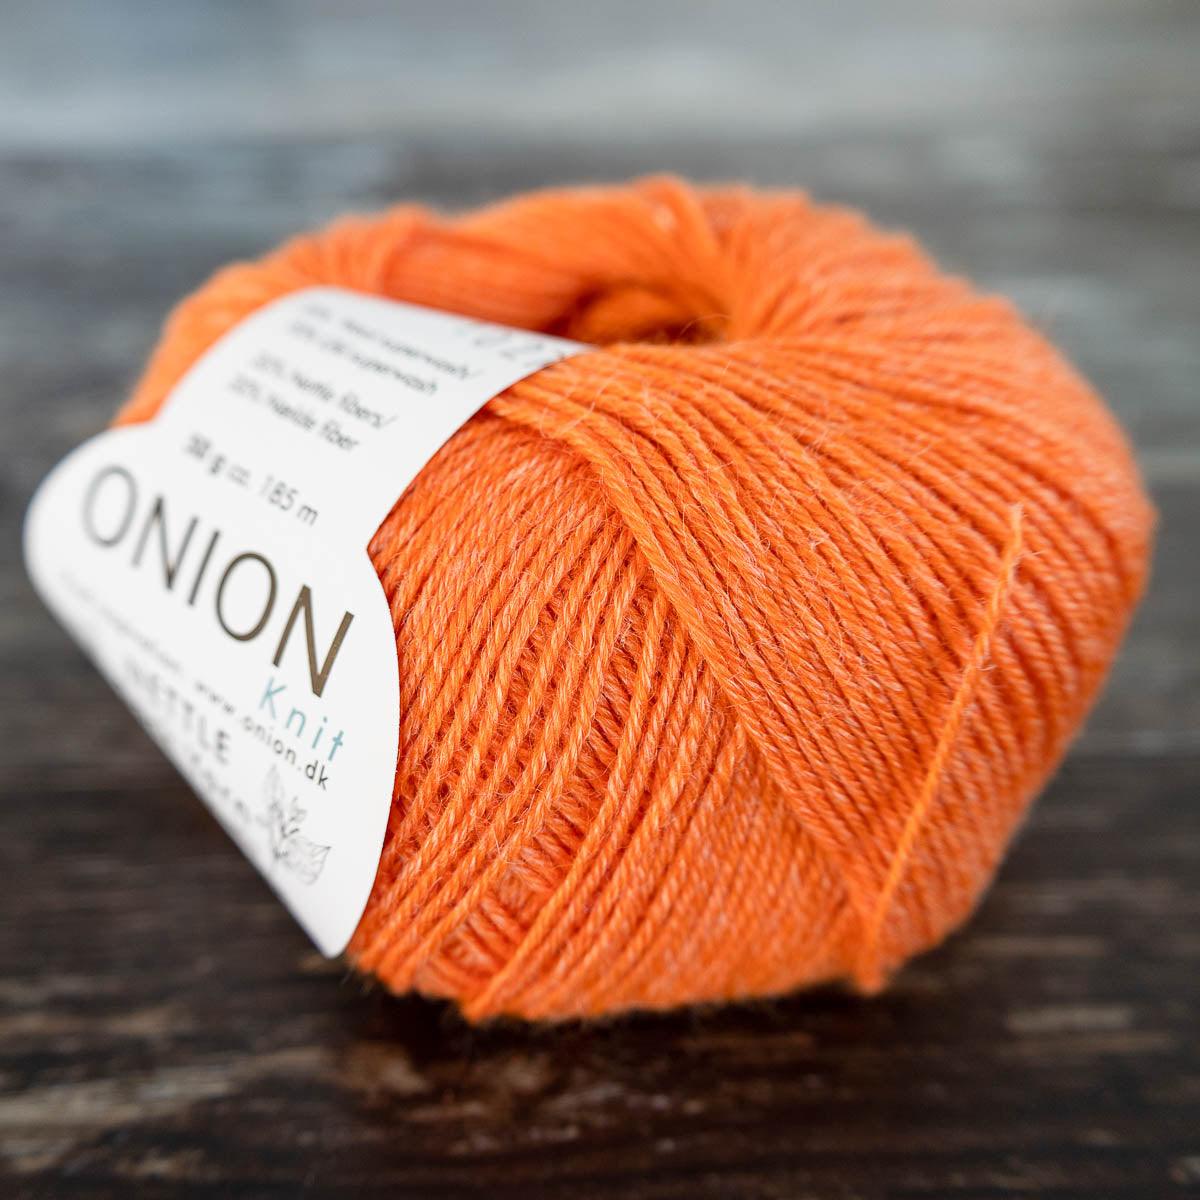 Onion Onion Nettle Sock Yarn - 1027 orange - Yarn